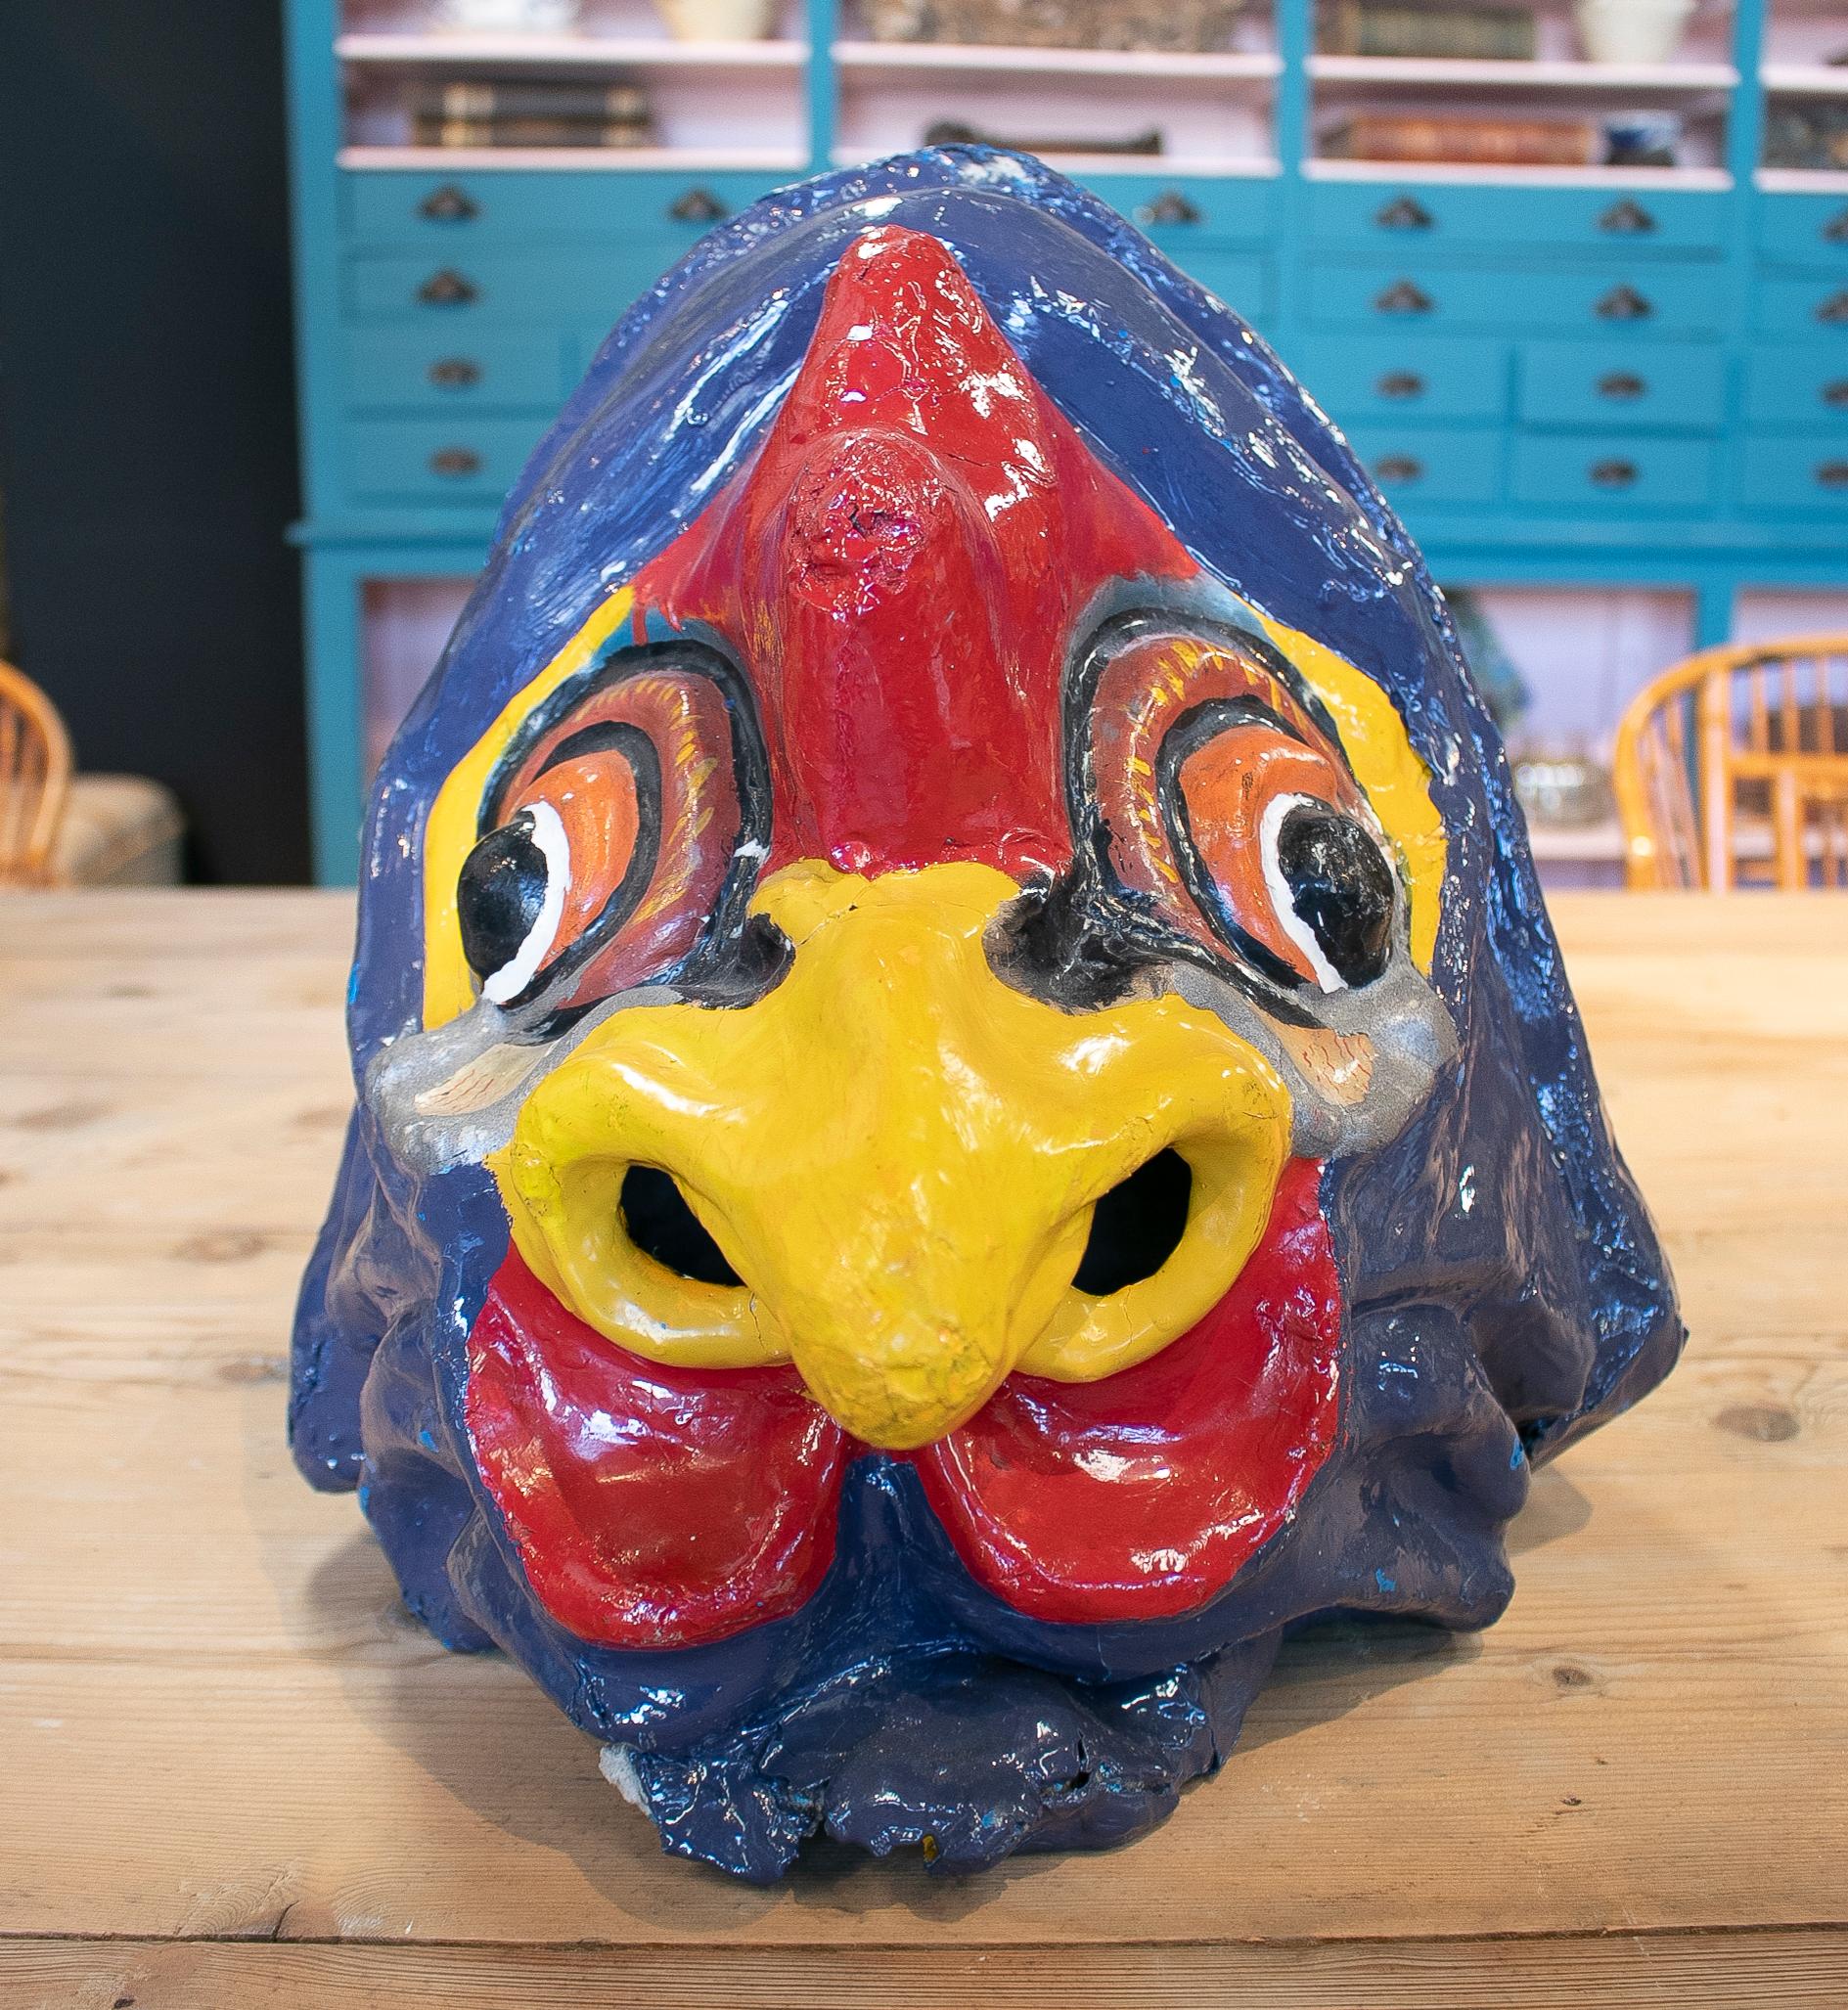 Beliebte handbemalte spanische Hahnenkopfmaske aus Pappmaché aus den 1950er Jahren, die bei Dorffesten getragen wurde.